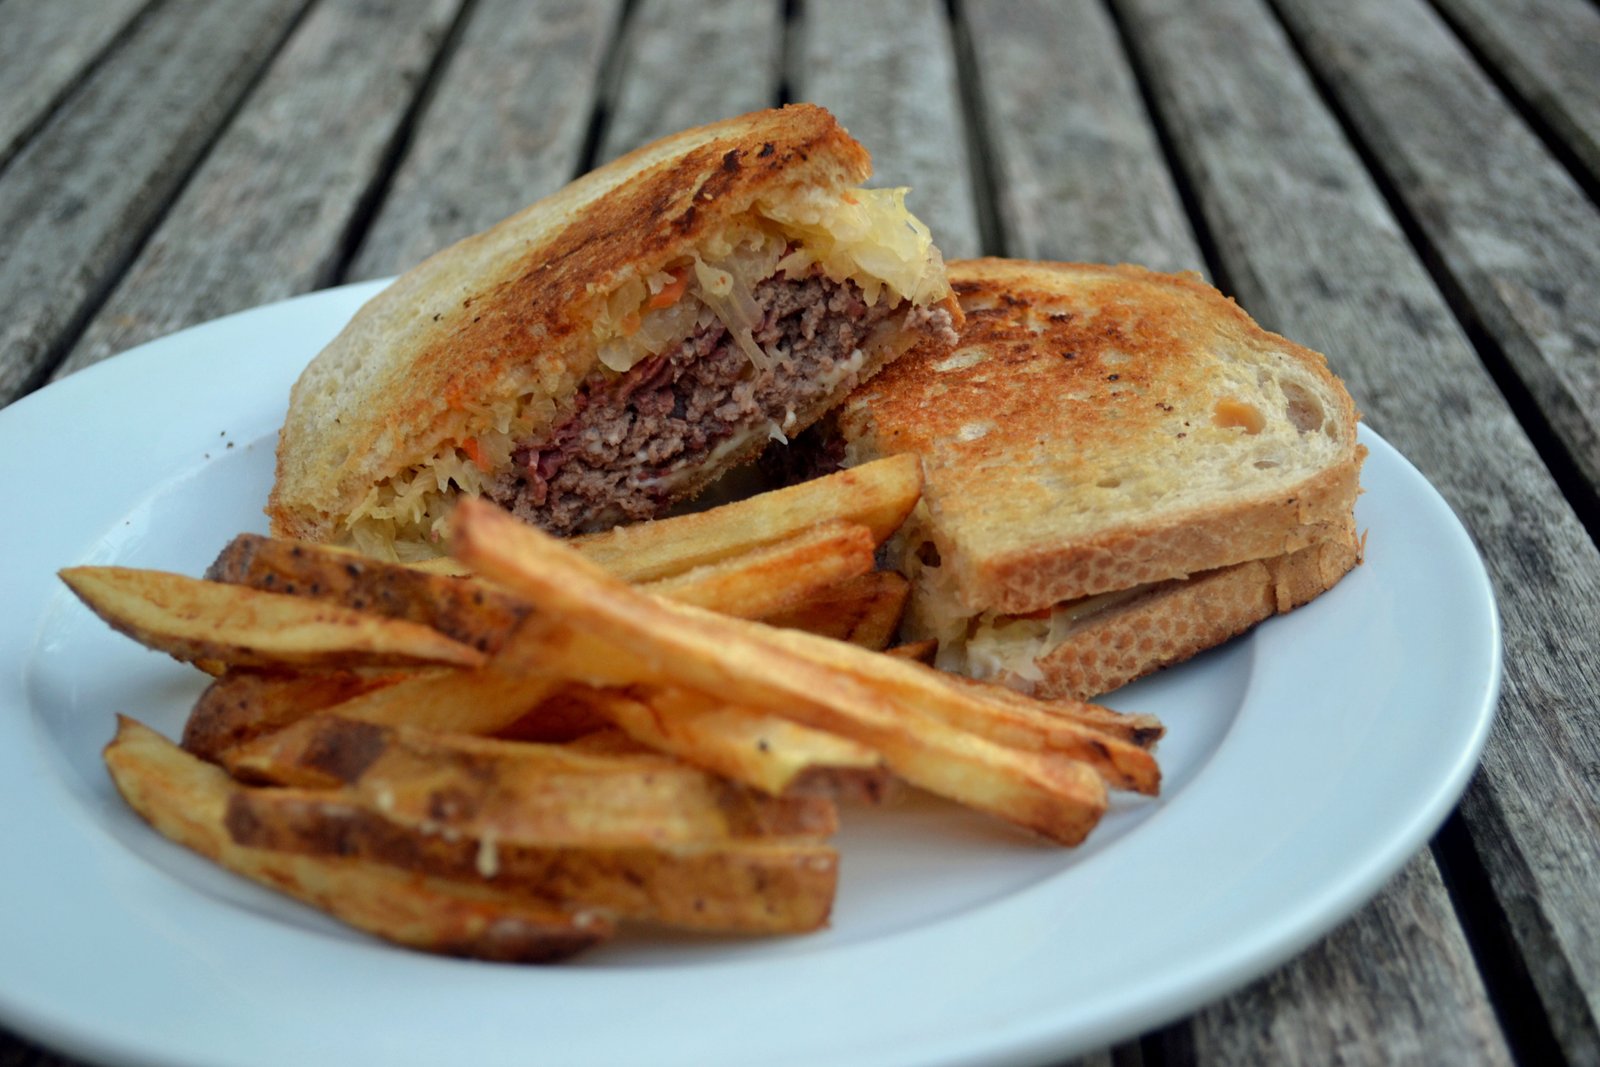 Reuben Patty Melt and Sandwich King’s Fries